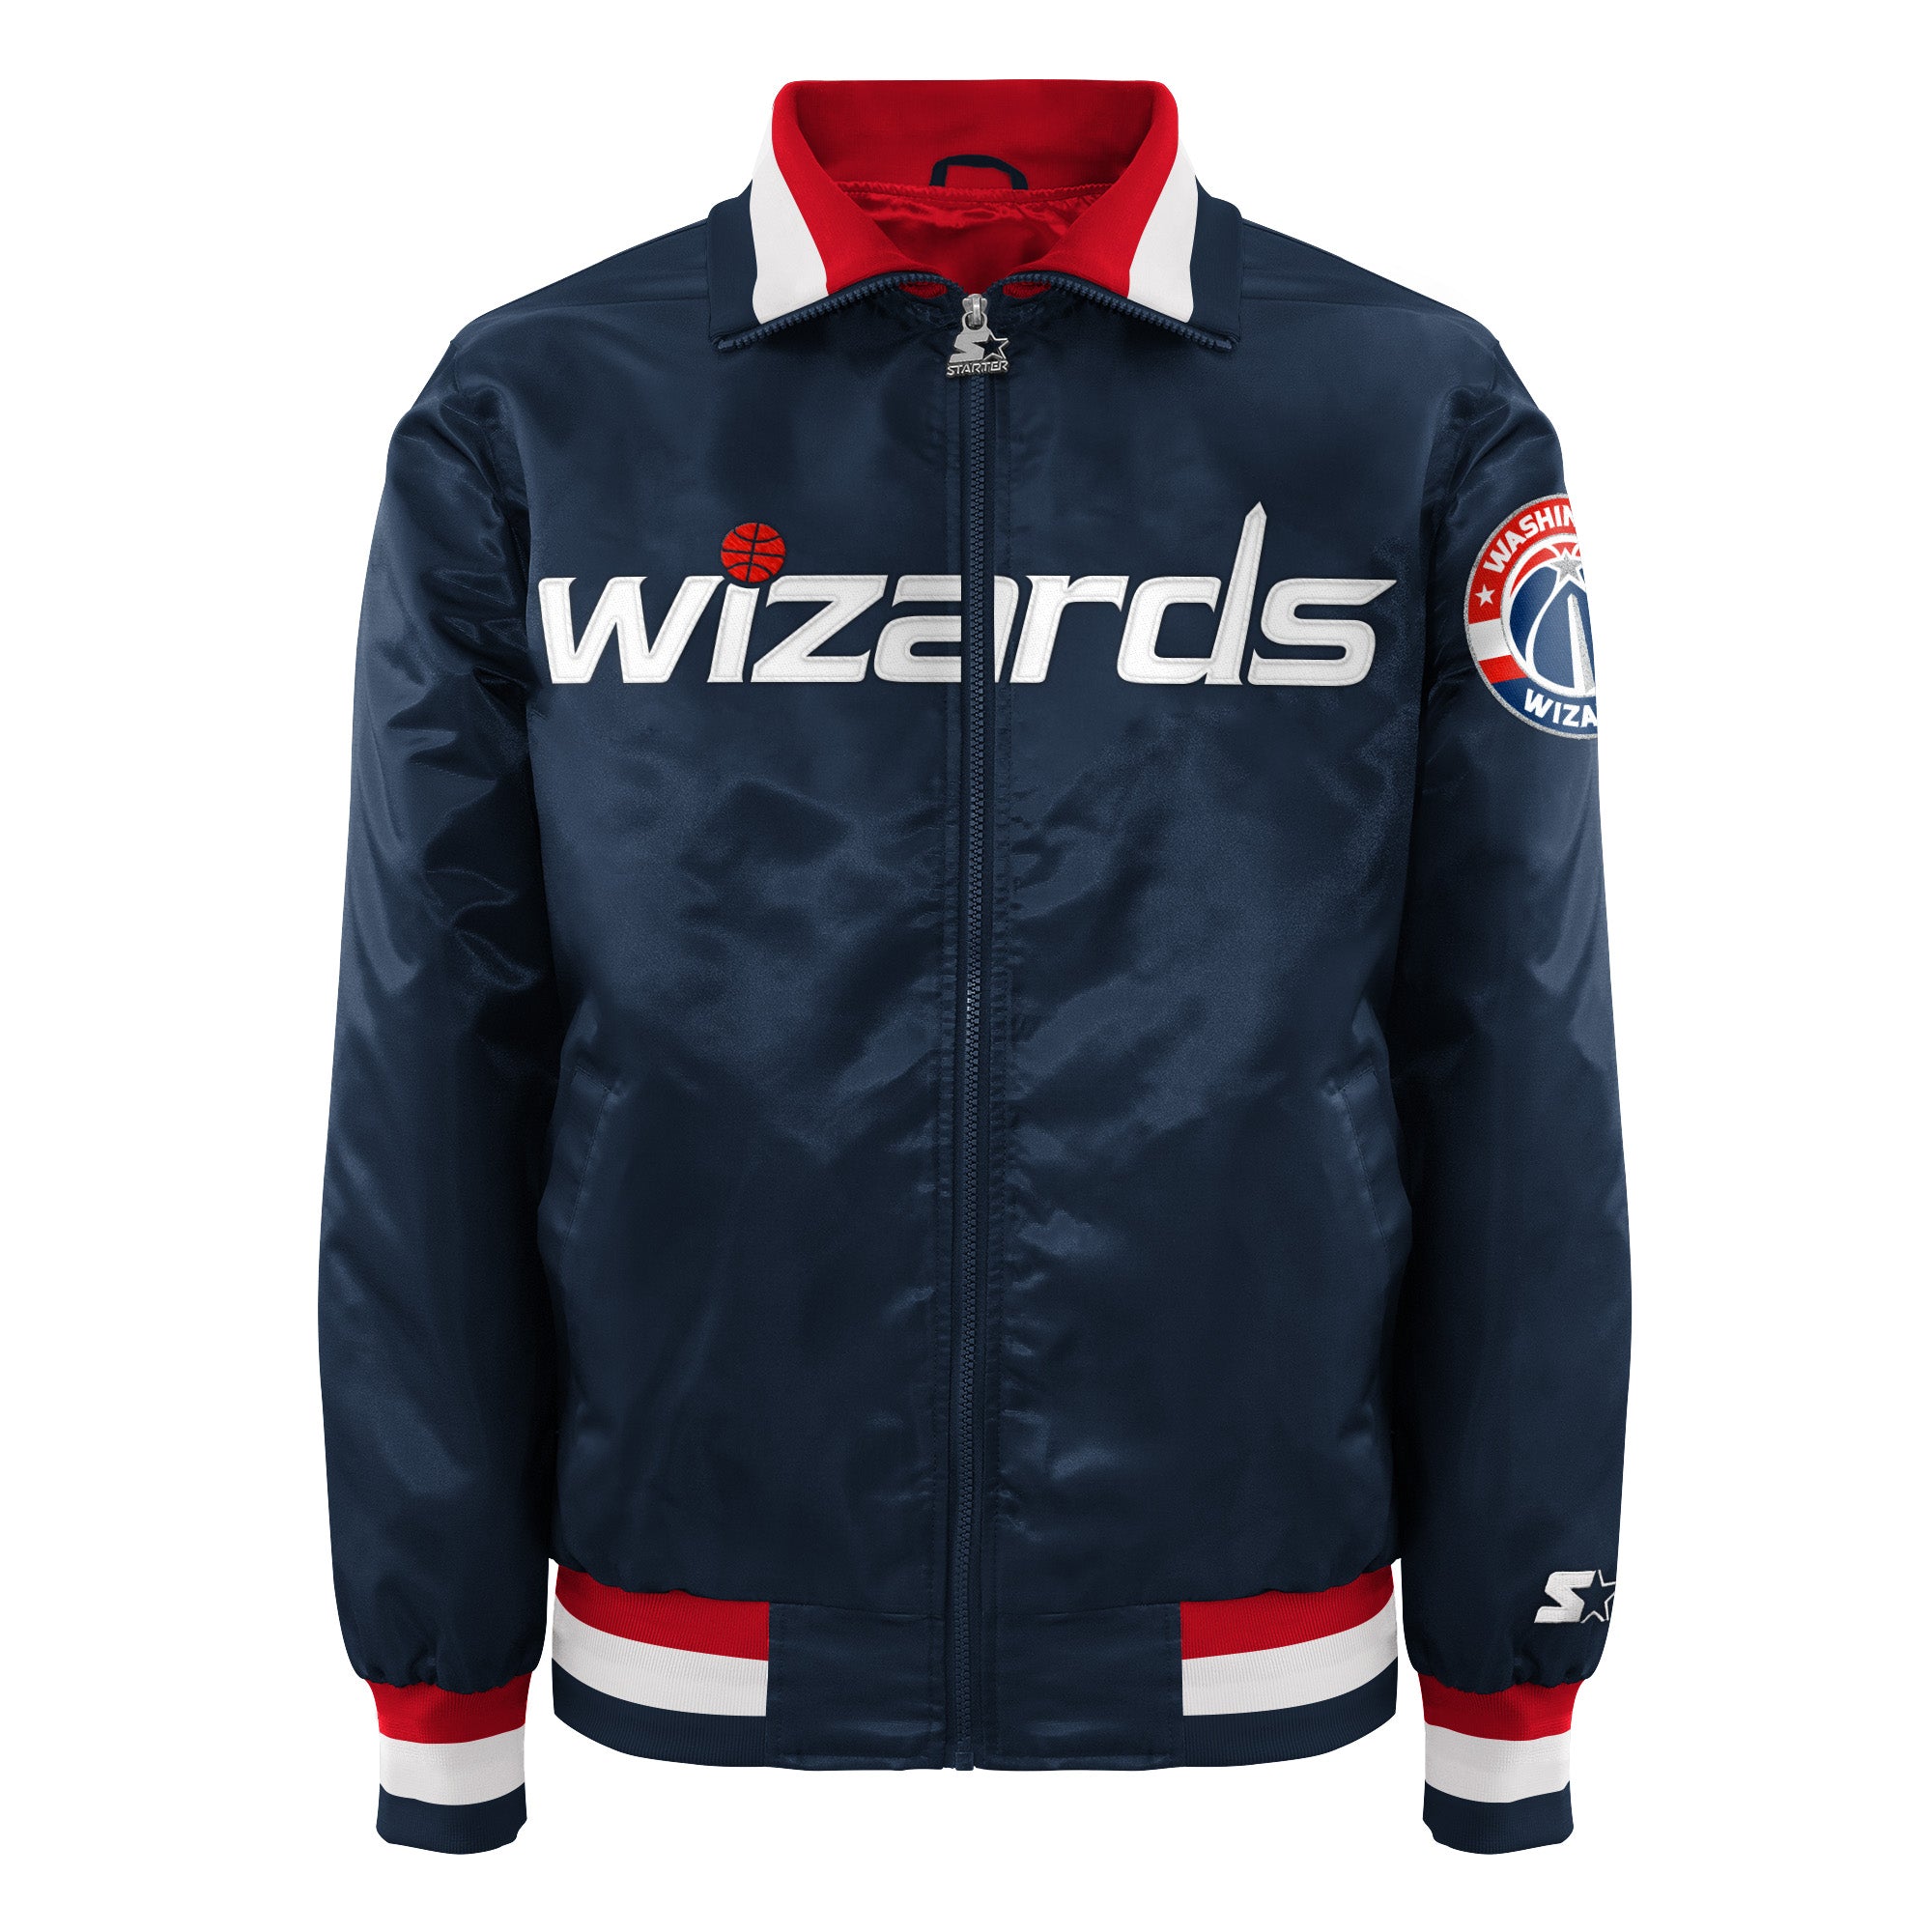 wizards jacket